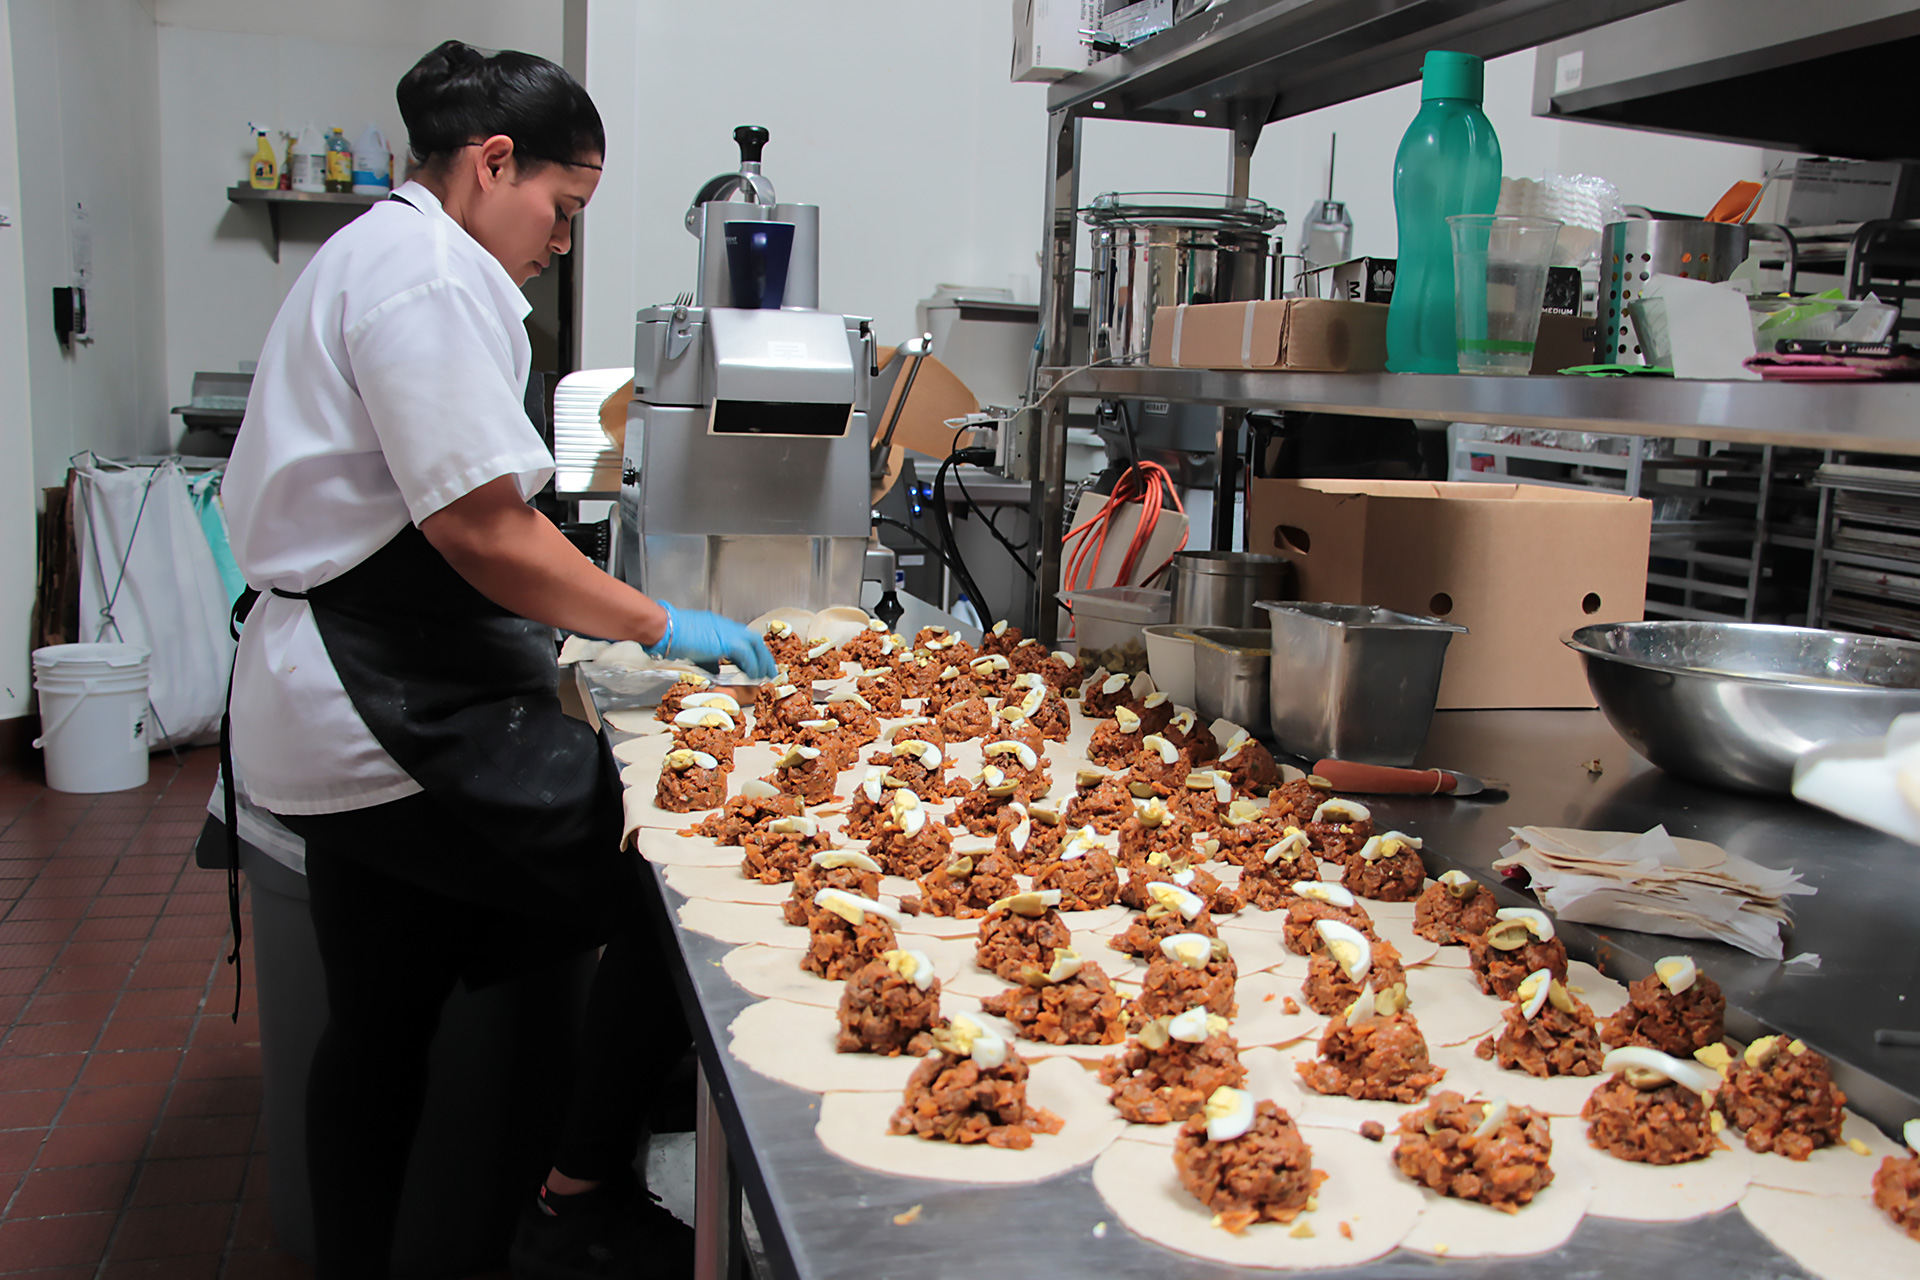 El Sur empanadas being made in the kitchen